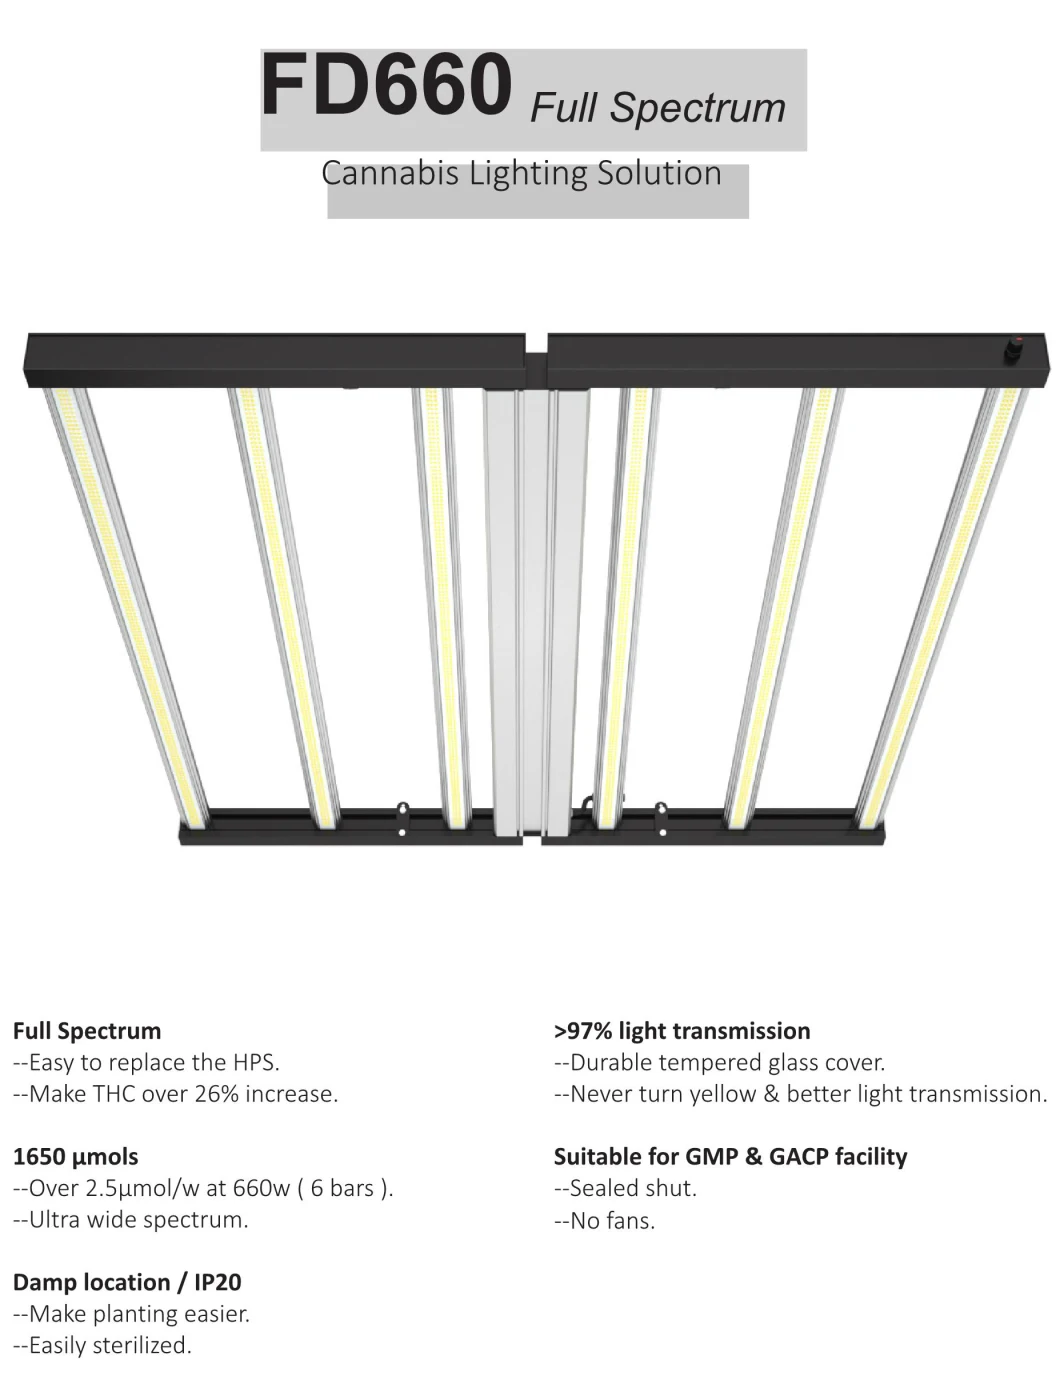 High Efficacy 660W Fluence Spydr LED Grow Light Folding Grow Lamp